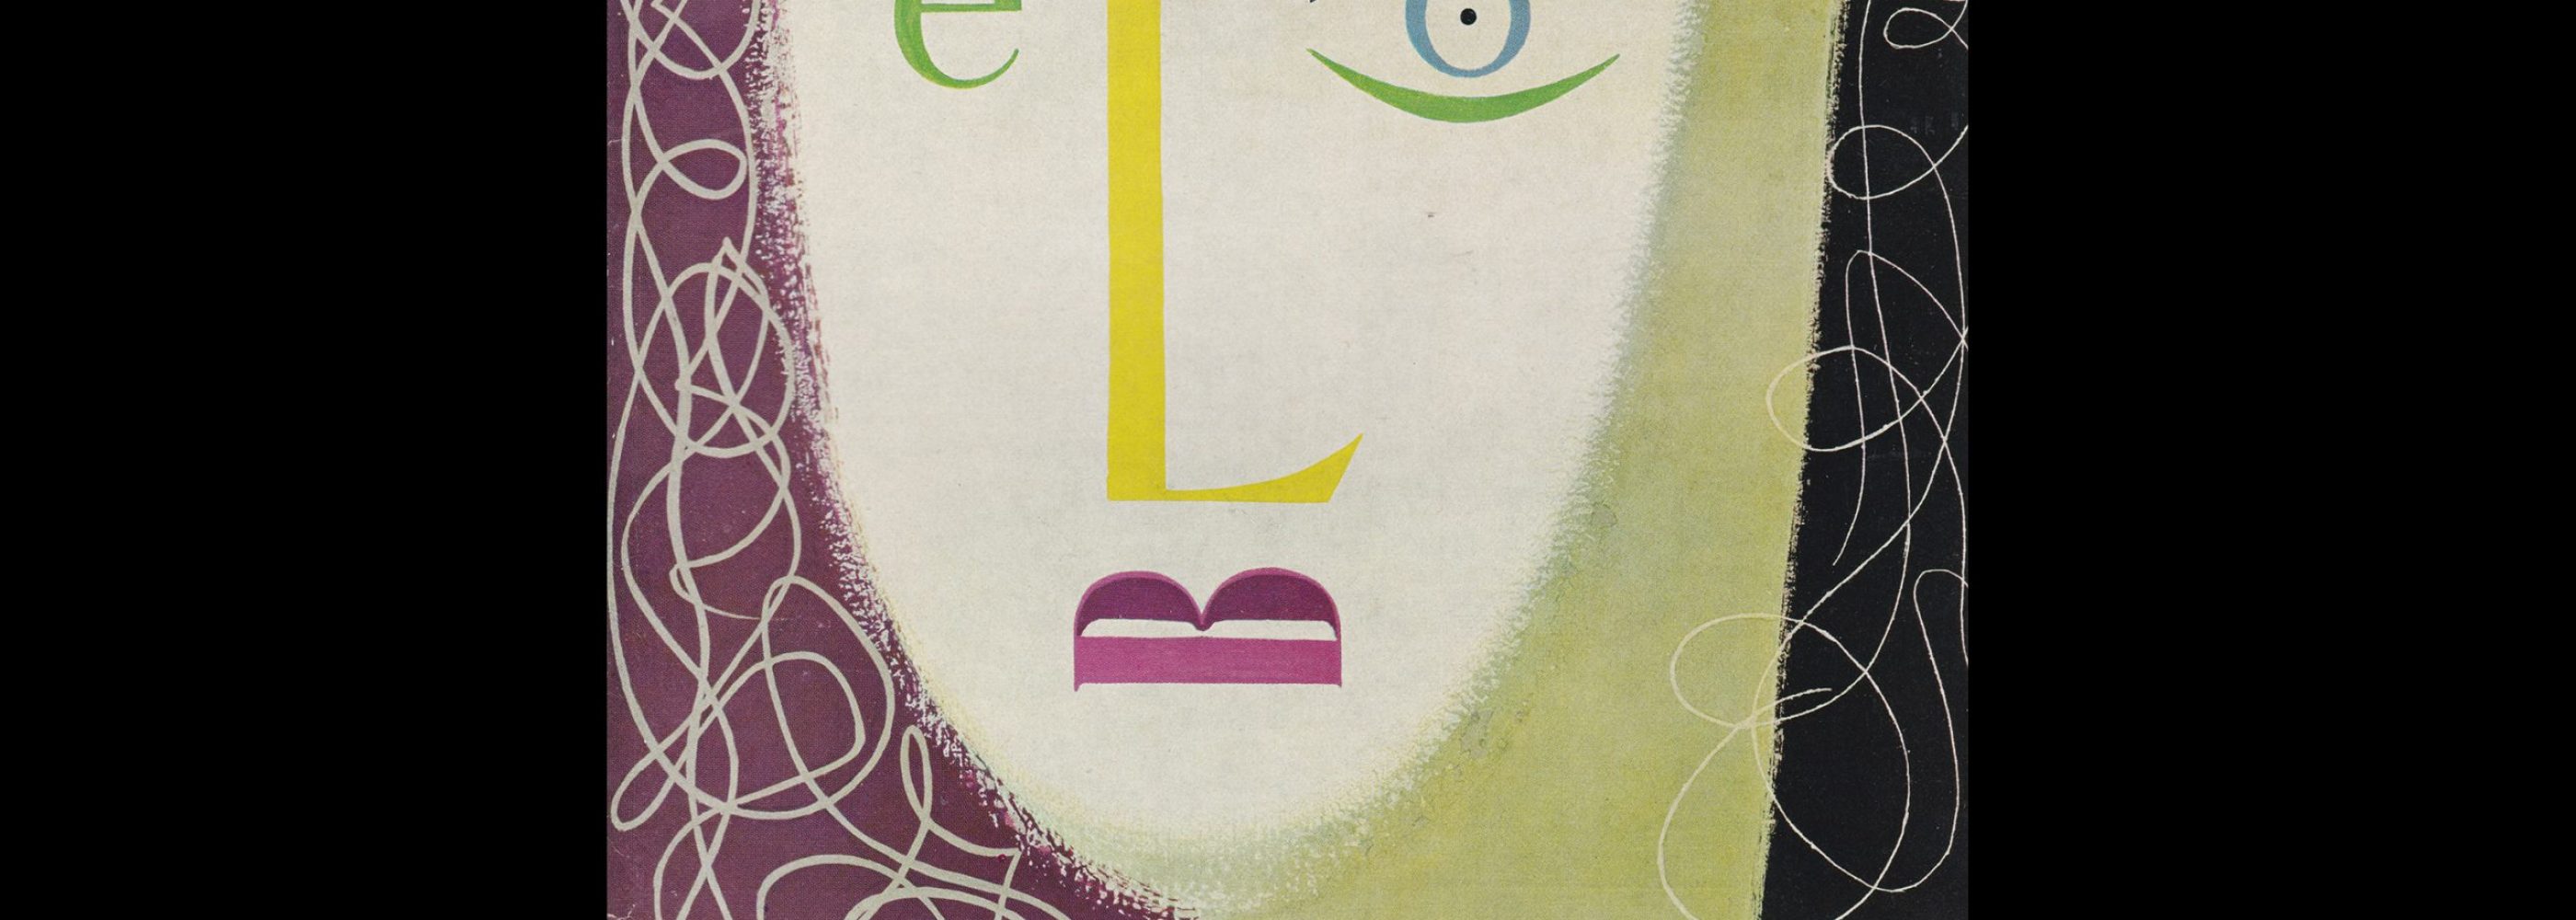 Graphik - Werbung + Formgebung, 2, 1953. Cover design by José Ortega